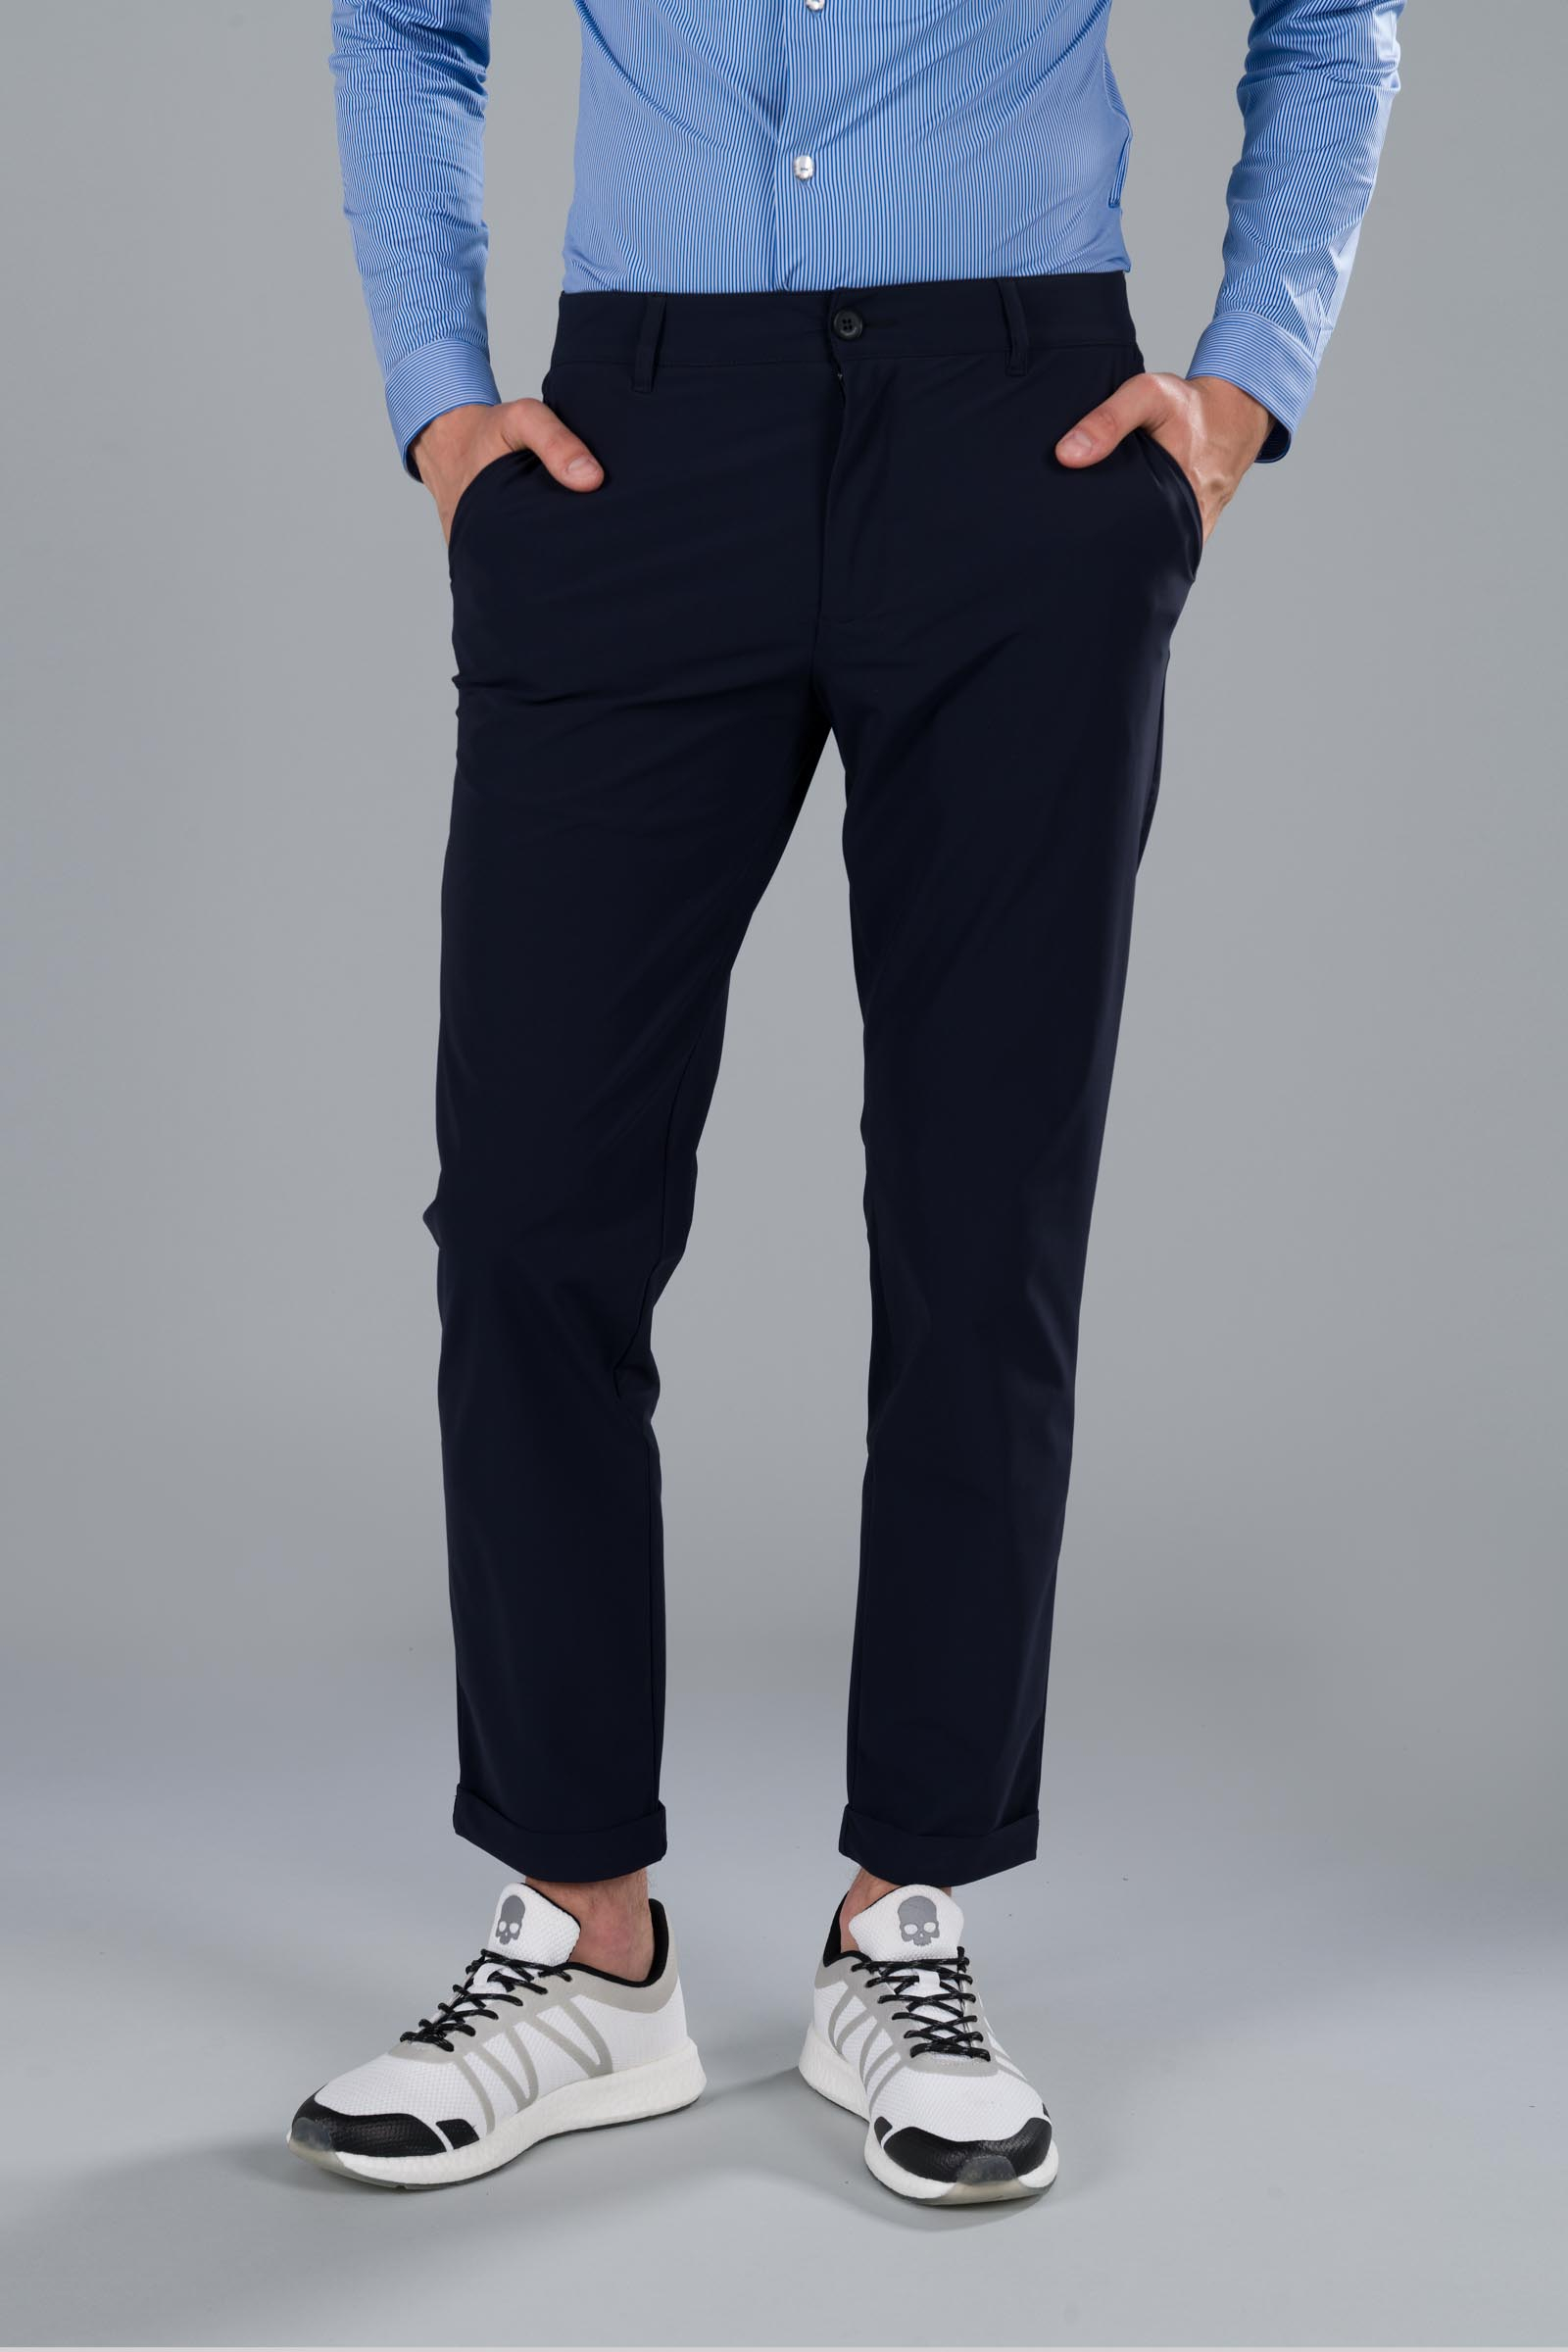 CLASSIC PANTS - BLUE NAVY - Hydrogen - Luxury Sportwear